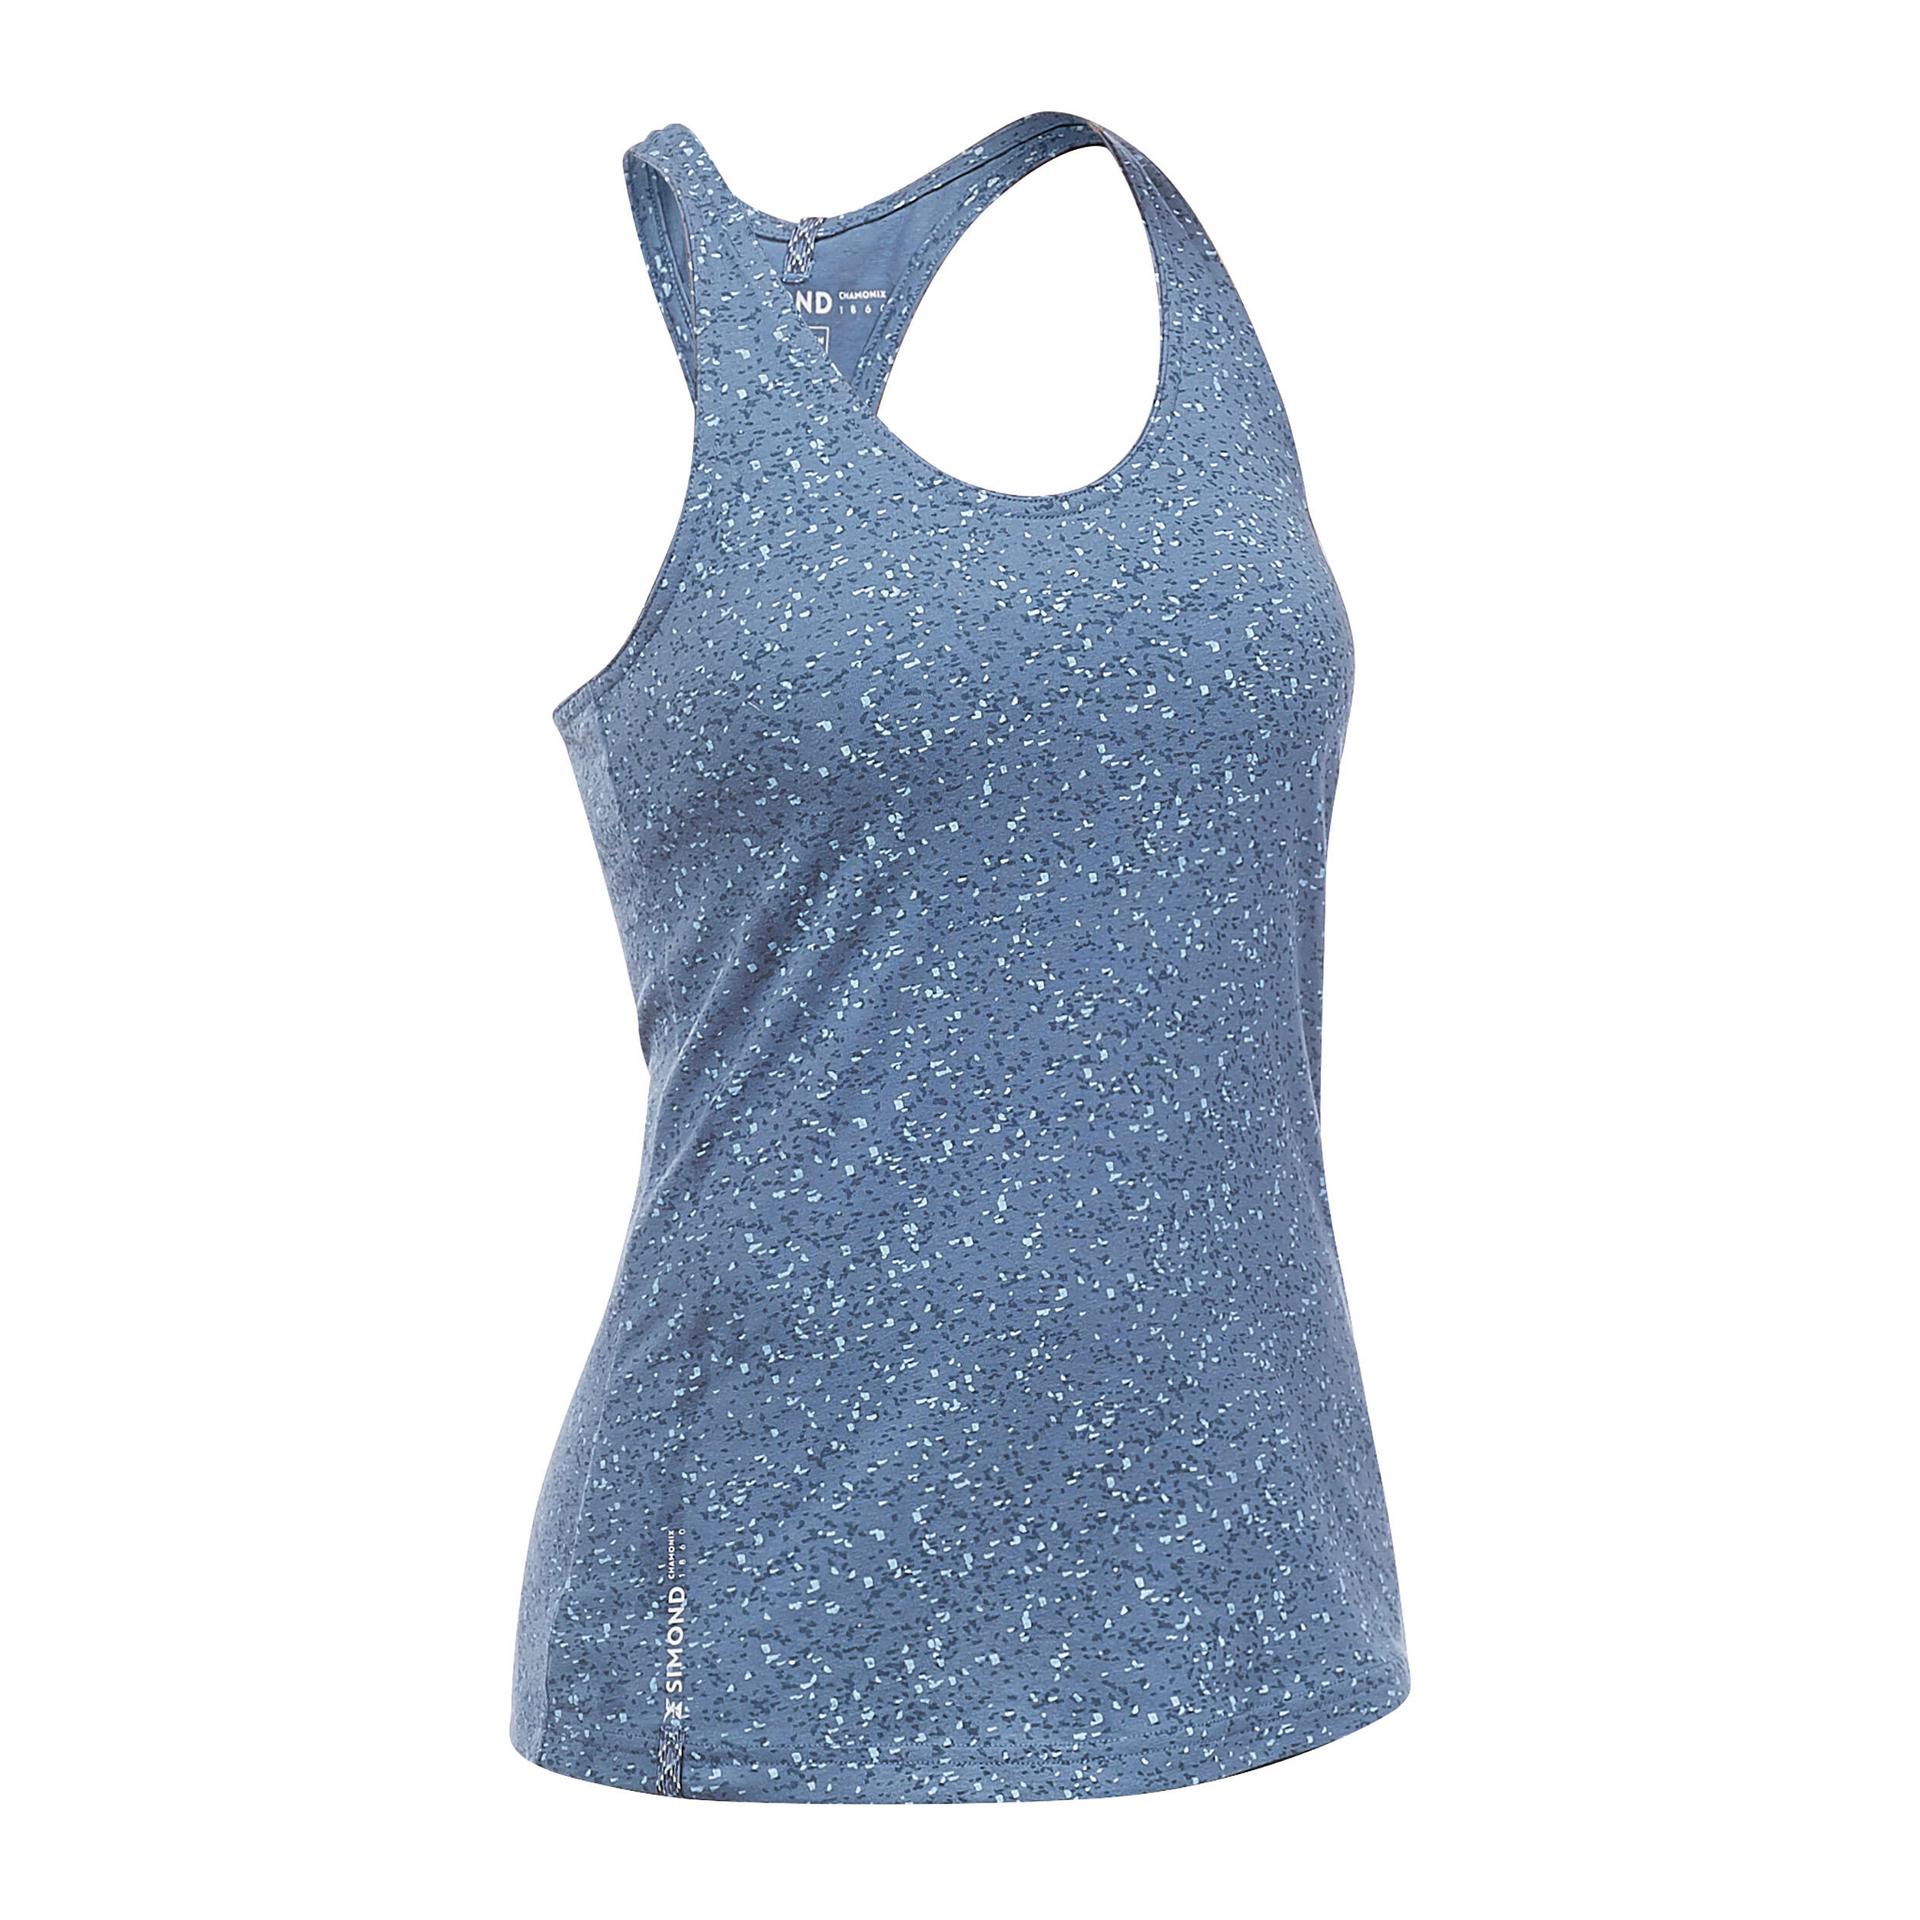 women's-climbing-vest-top-vertika-blue-grey